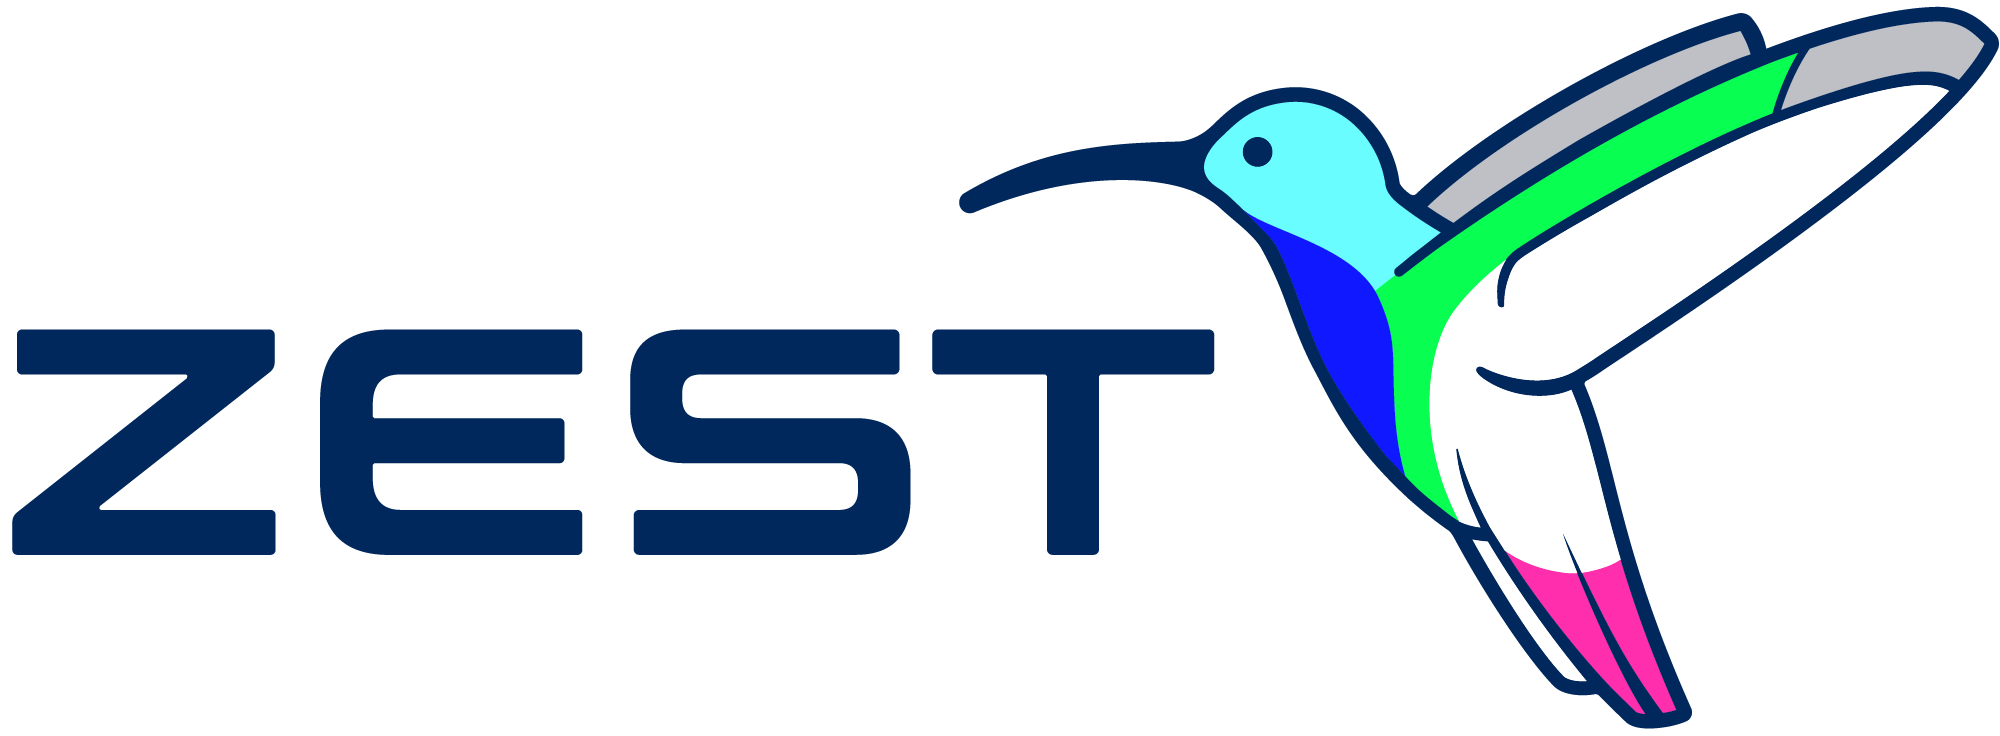 logo for Zest